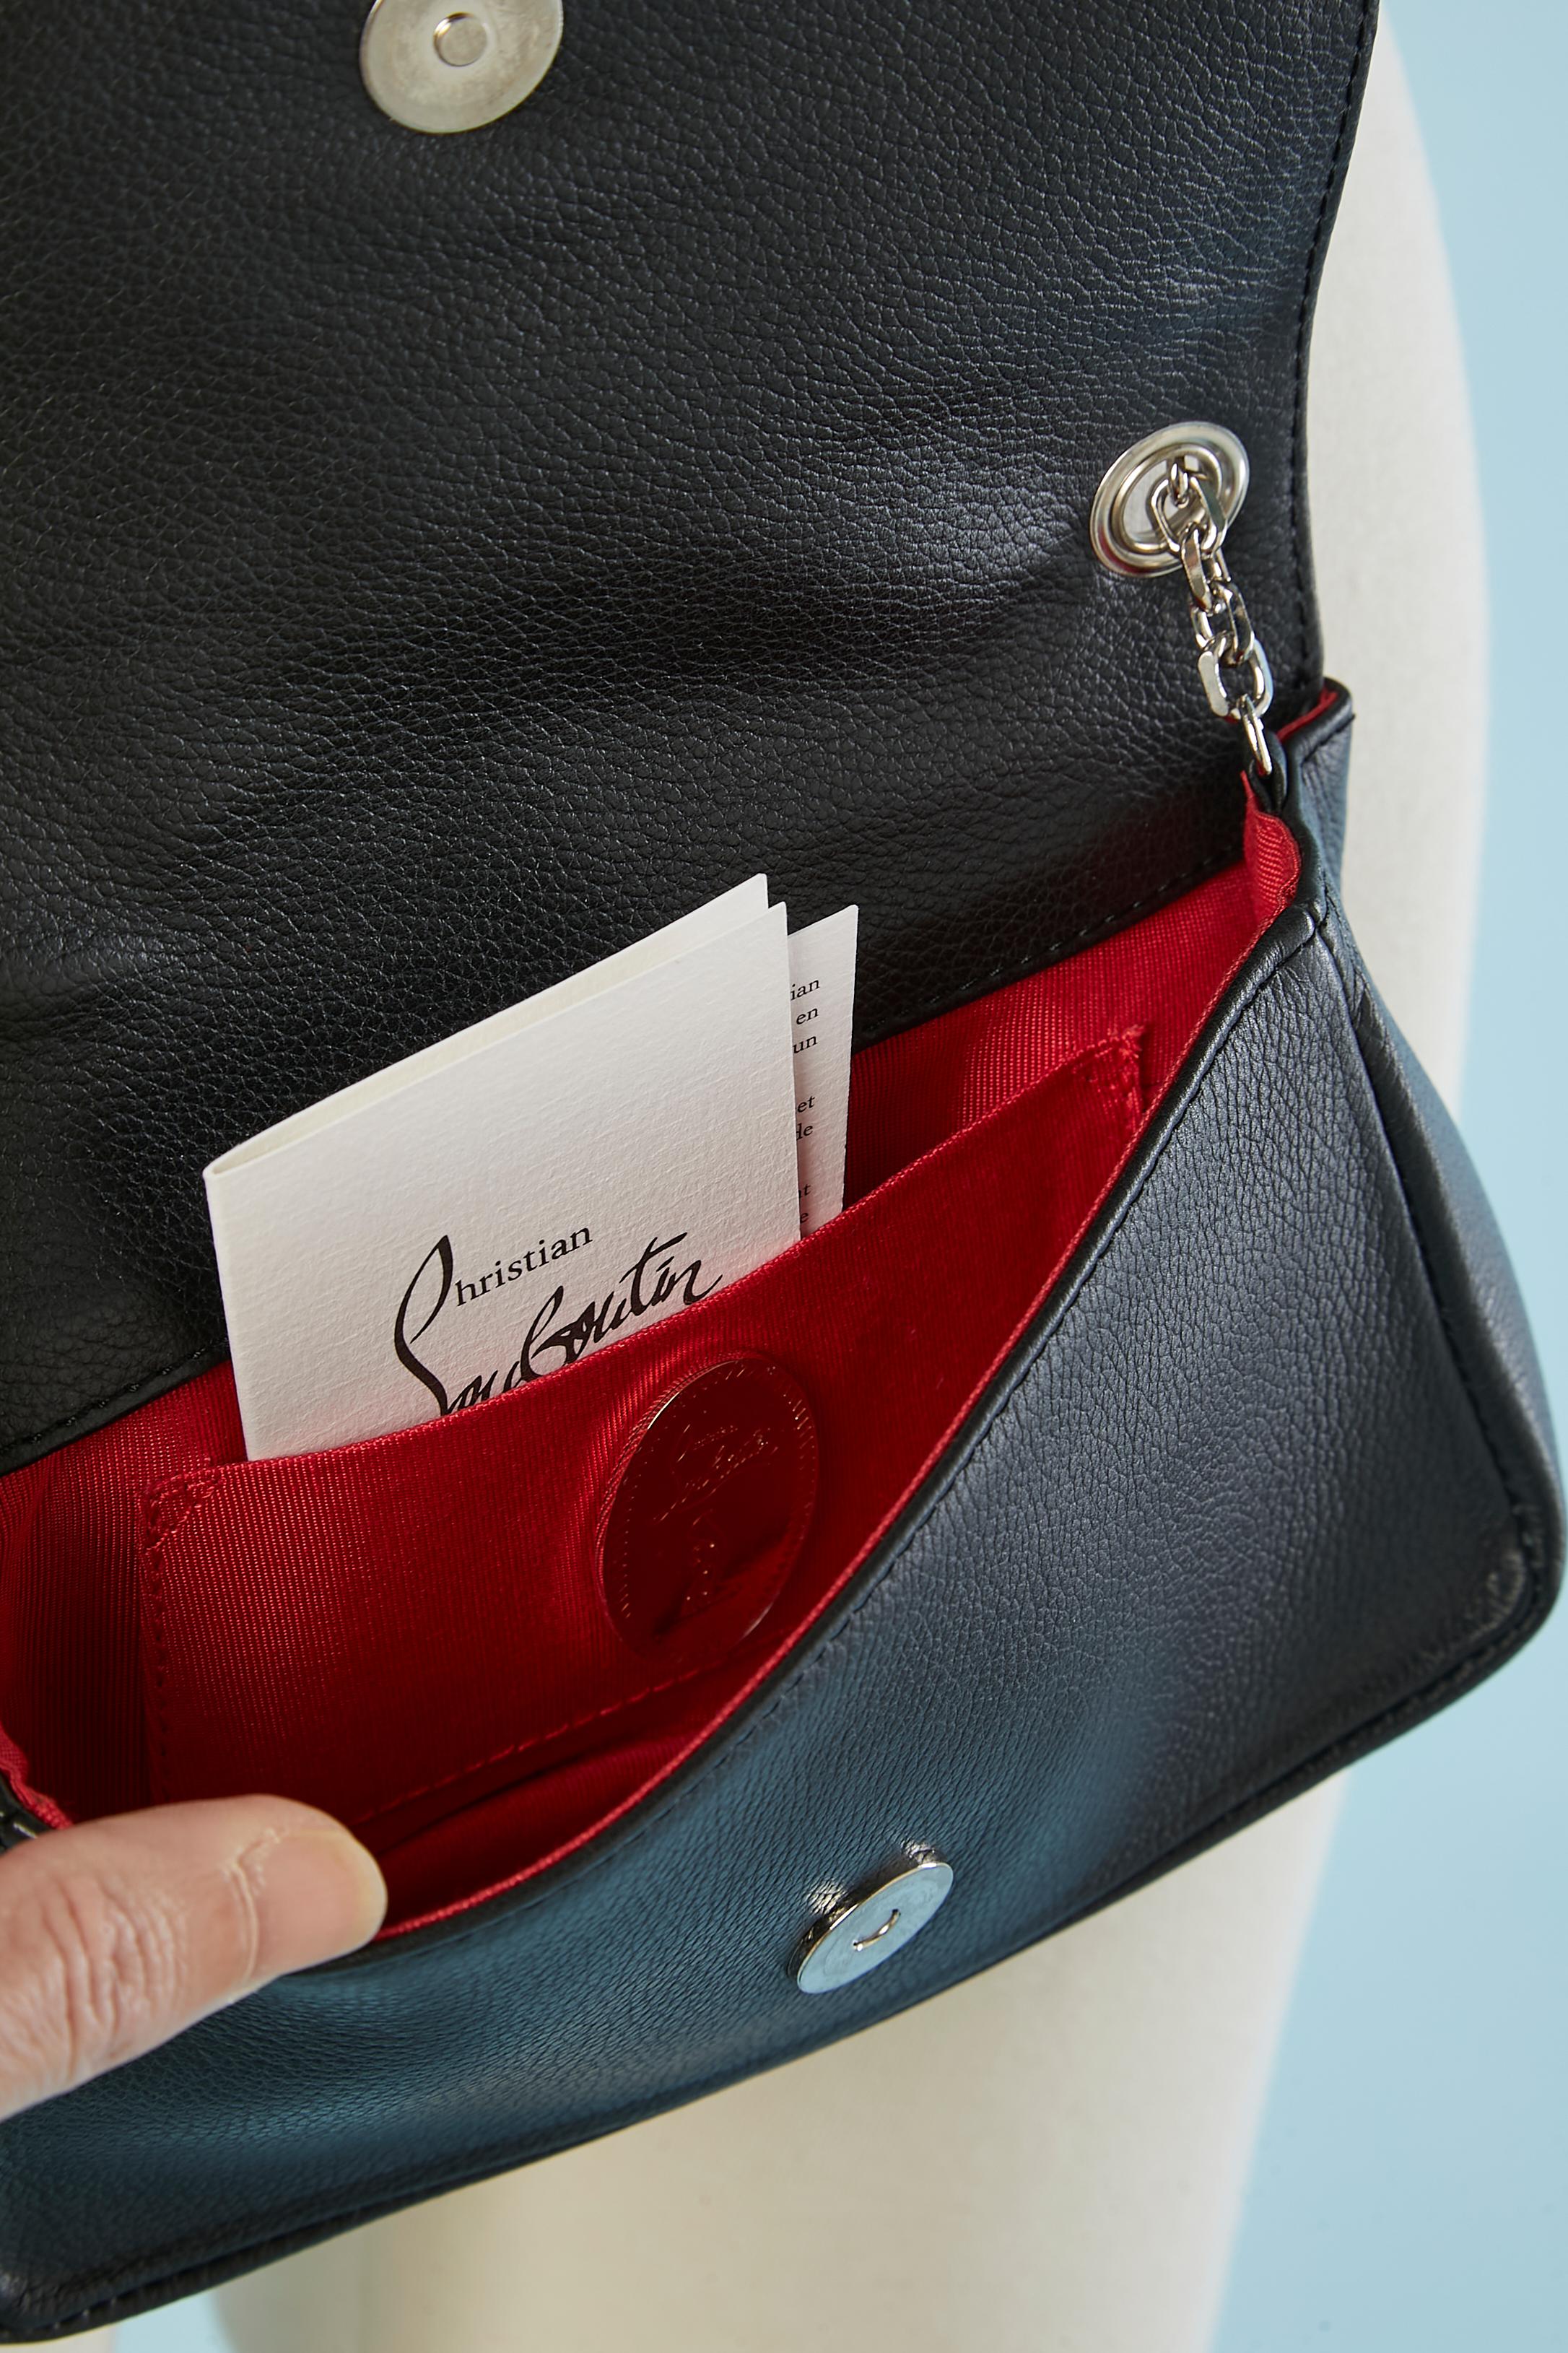 Artemis leather evening bag with Paris site-sight shoulder strap C. Louboutin  For Sale 3